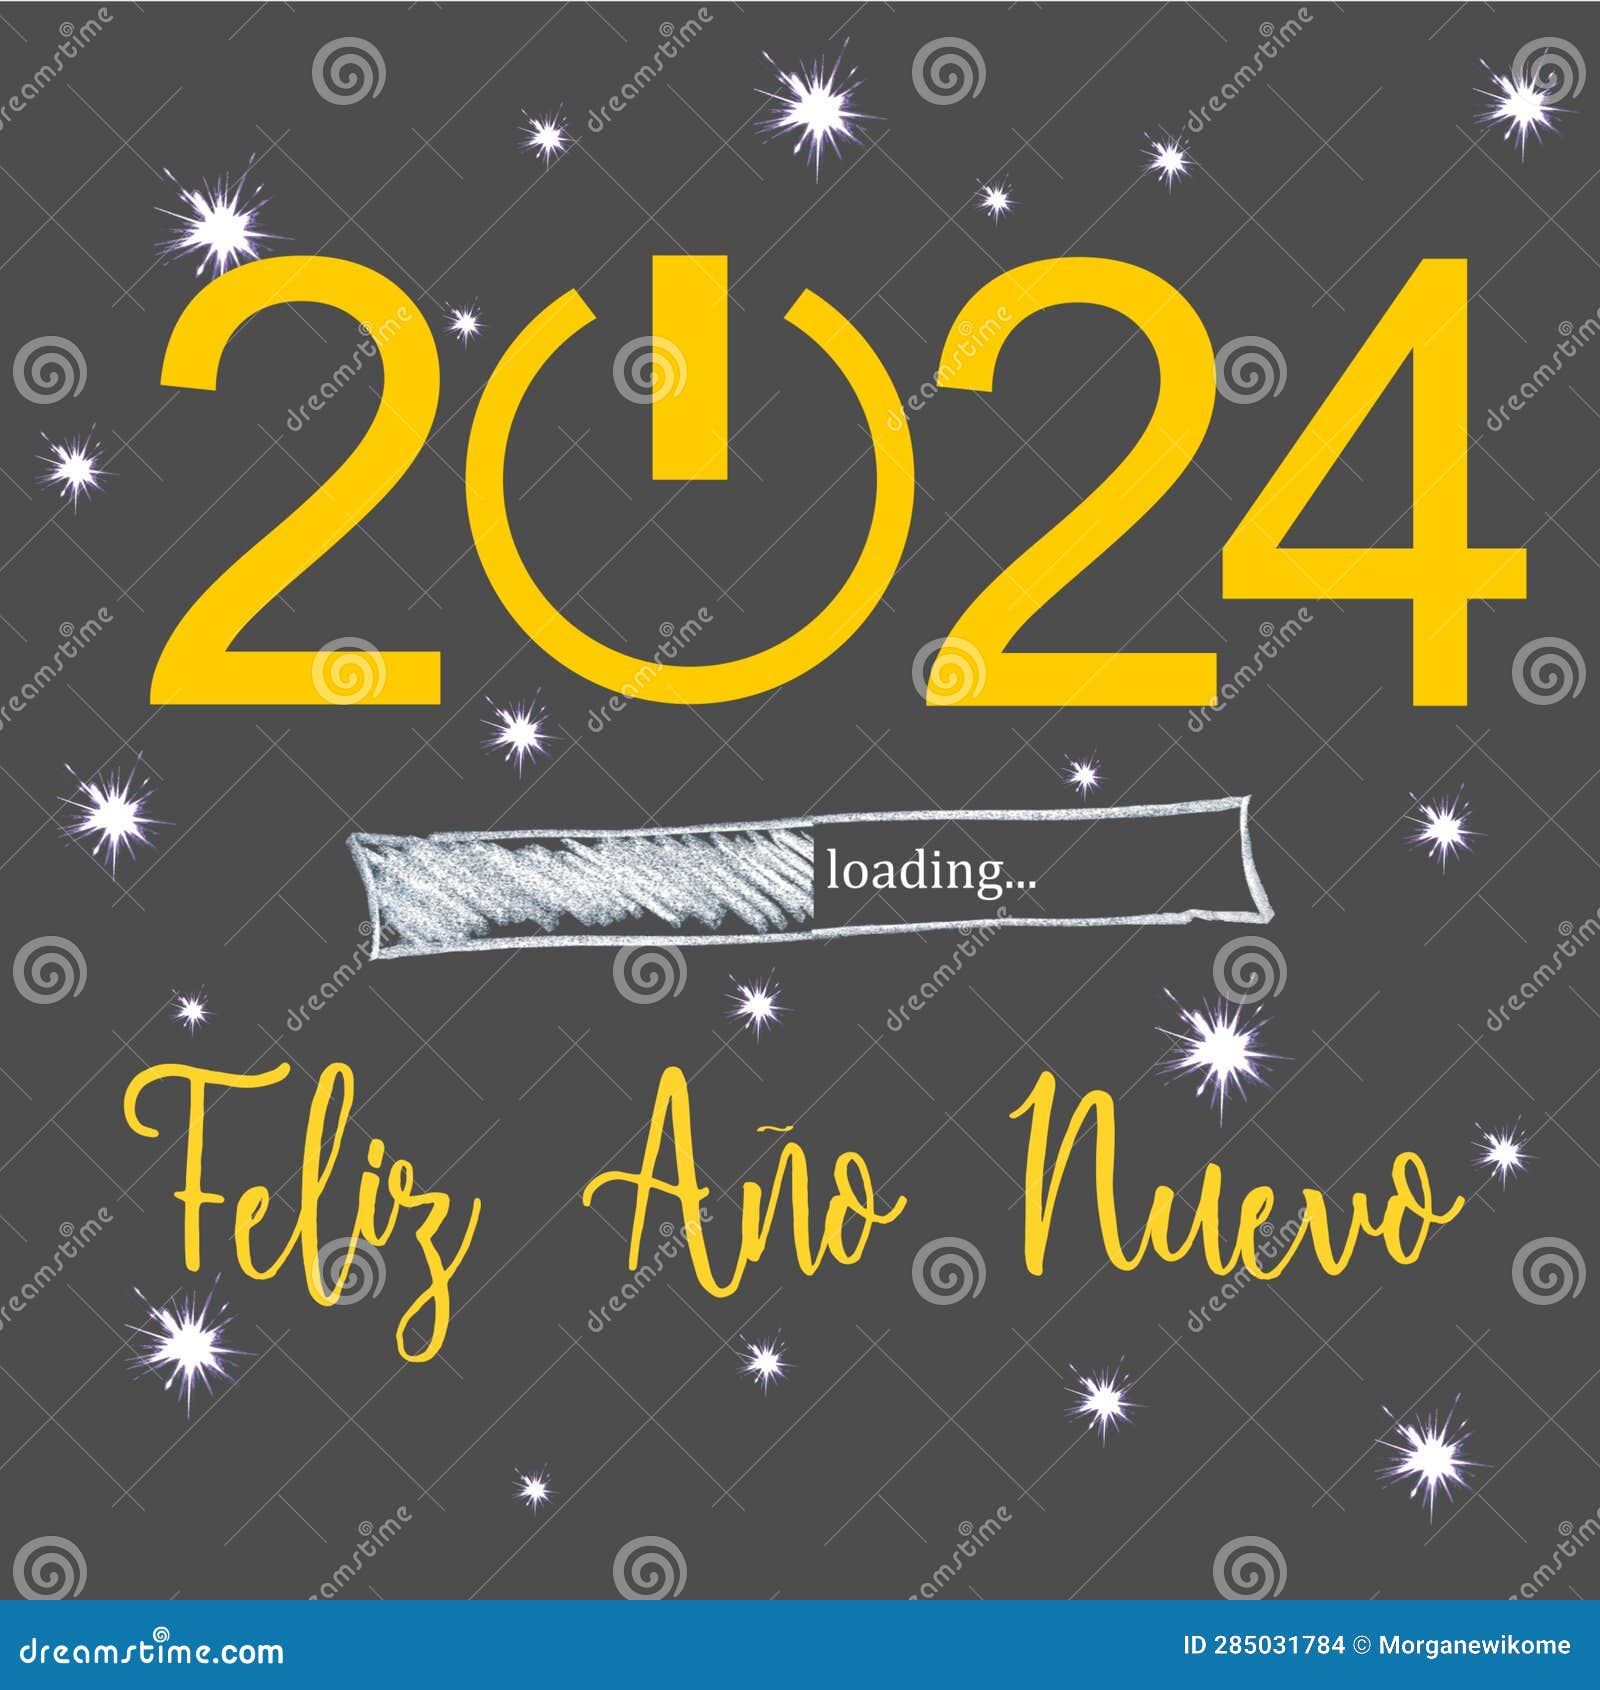 Nouvel an 2024 - Bonne Année 2024 - Meilleurs Vœux ! 